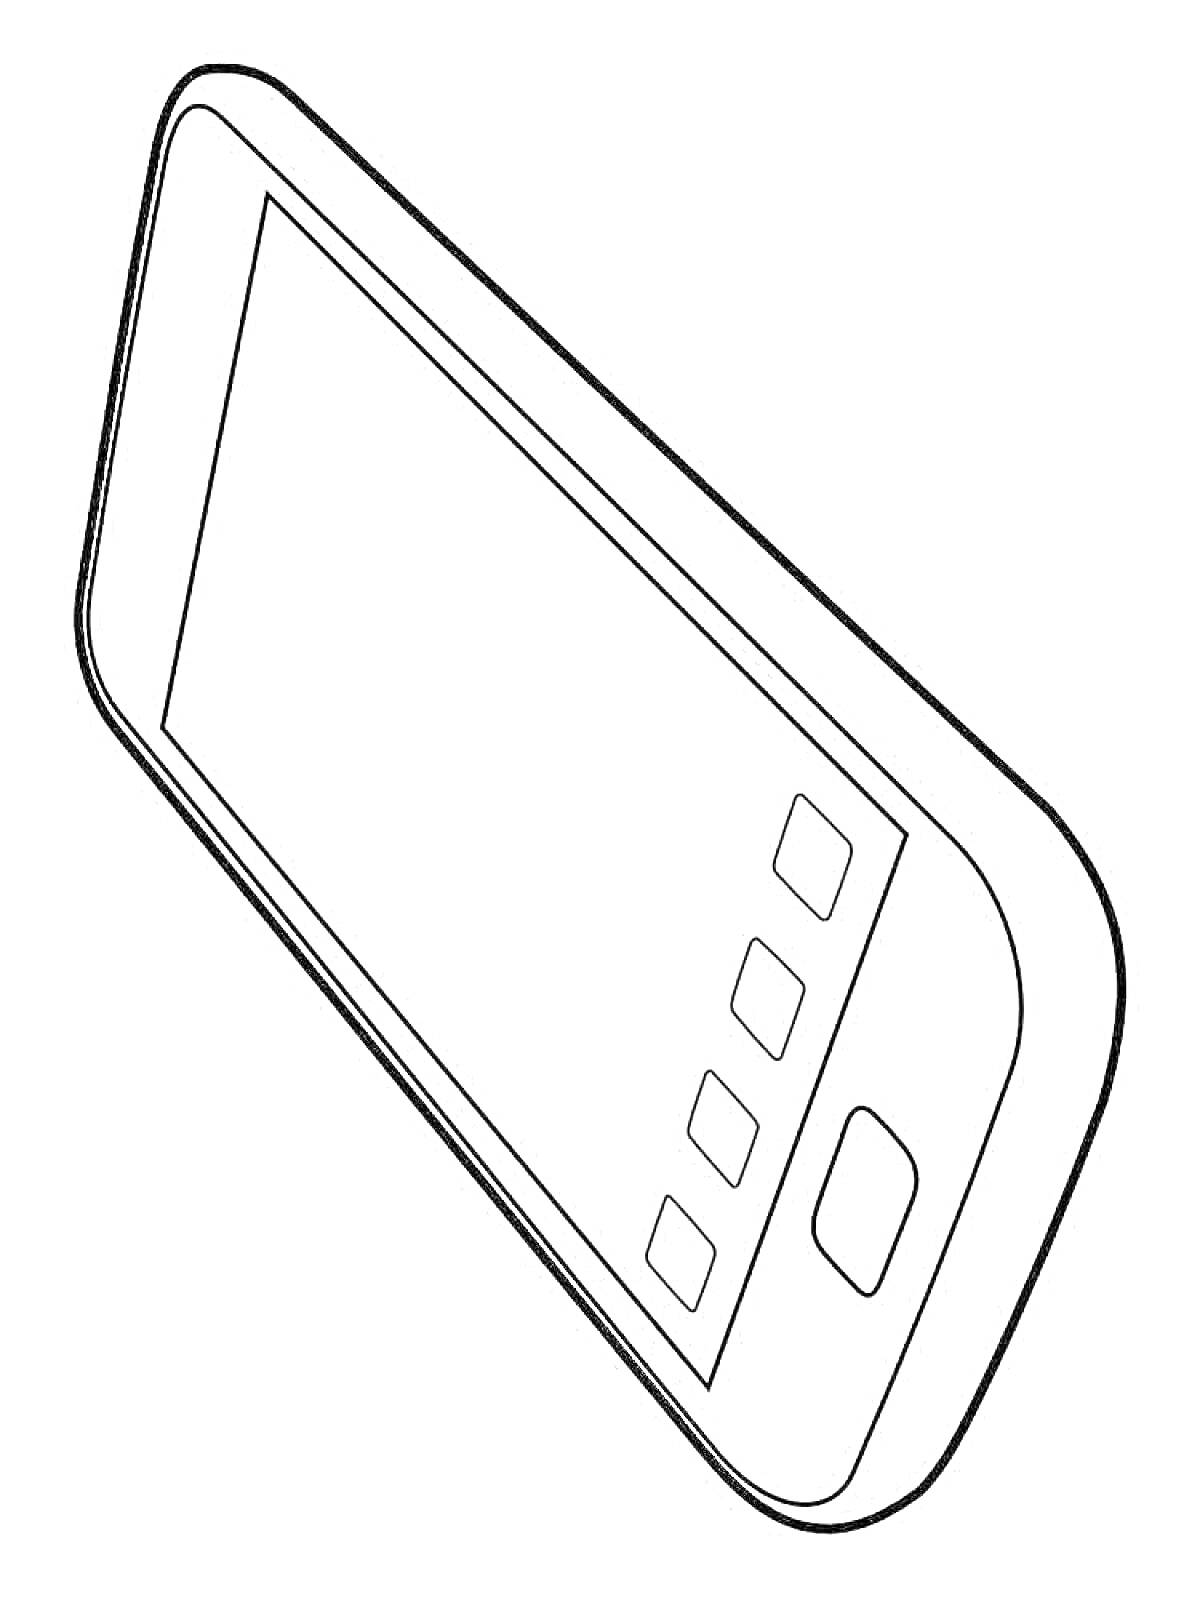 Раскраска Контур 13 айфона с сенсорным экраном и кнопками